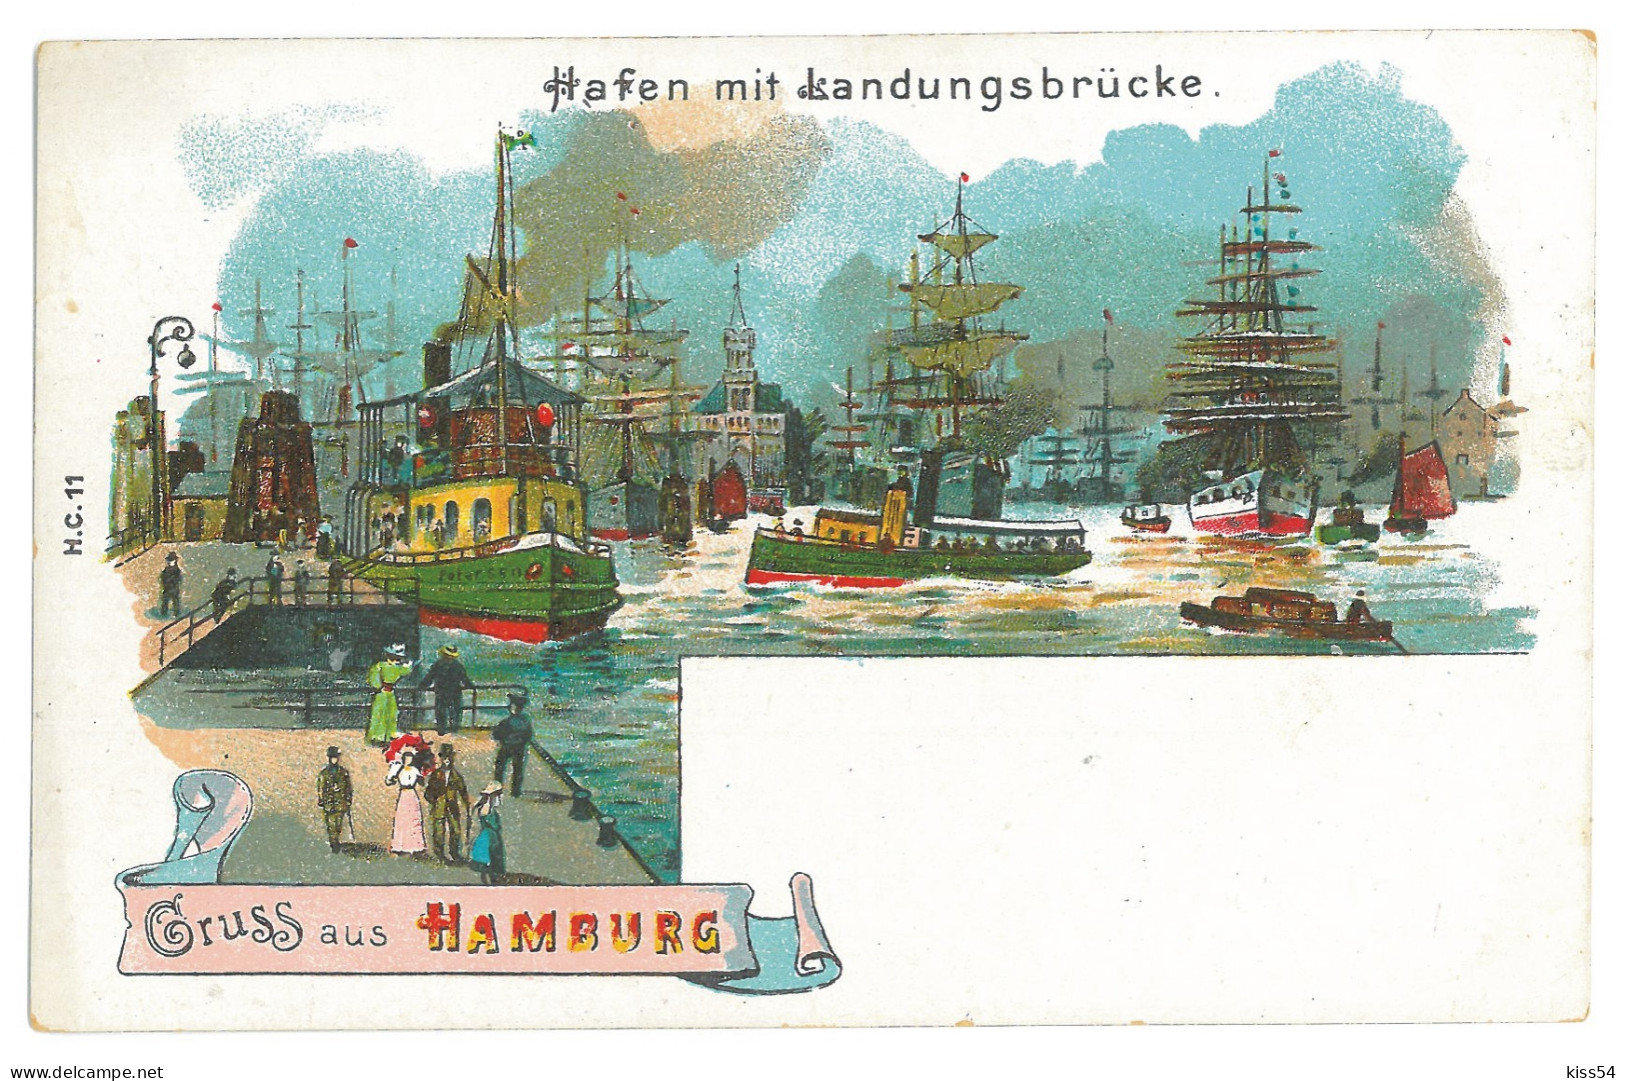 GER 31 - 16918 HAMBURG, Litho, Germany - Old Postcard - Unused - Harburg